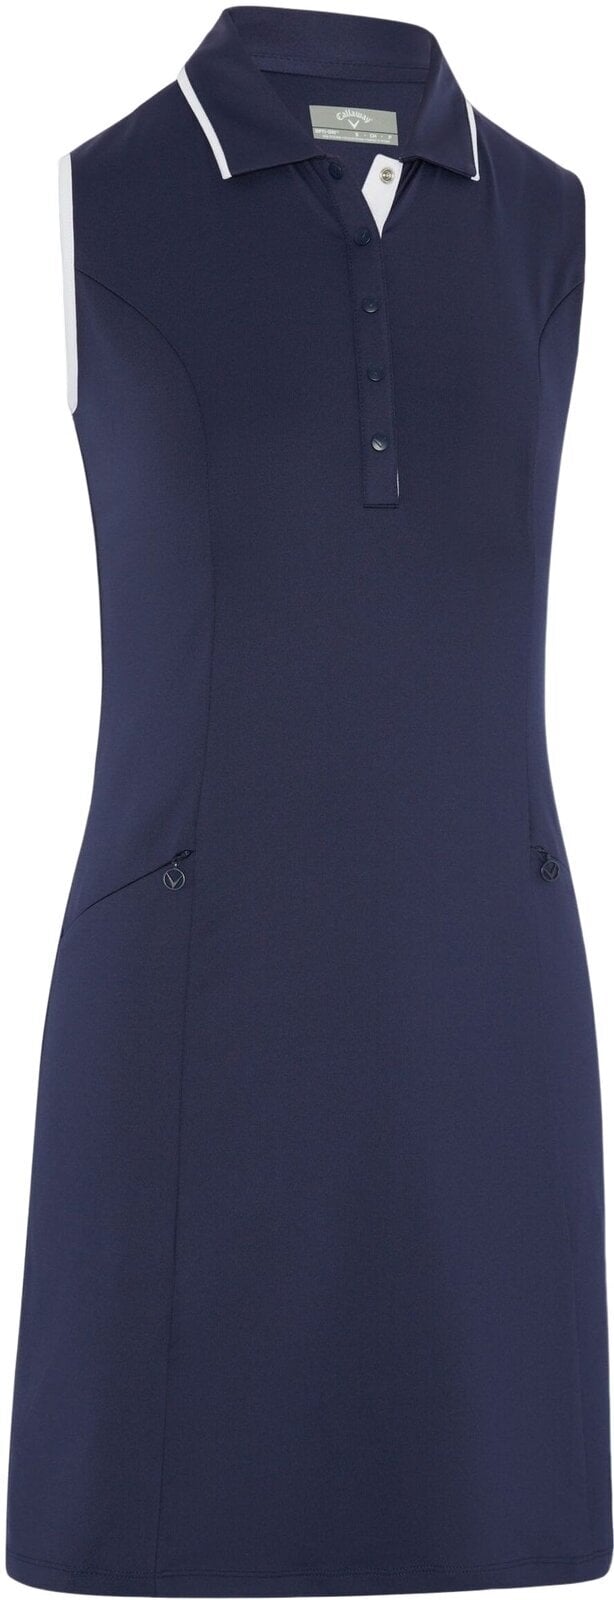 Suknja i haljina Callaway Womens Sleeveless Dress With Snap Placket Peacoat XL